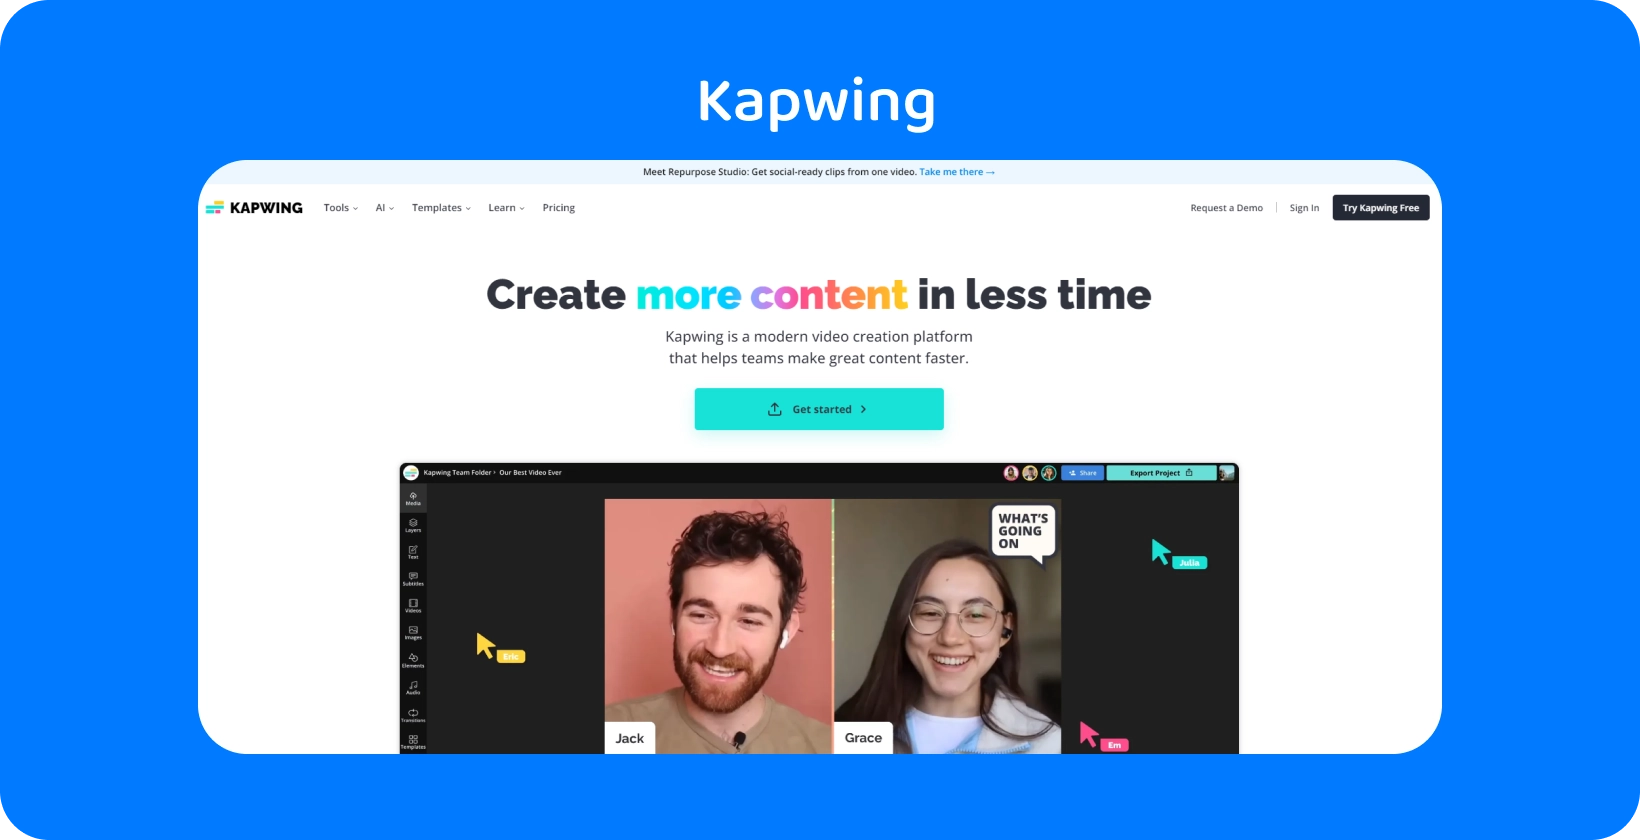 Kapwing subtitle editor прикажан со кориснички интерфејс, помагачки тимови во ефикасно создавање на содржини.